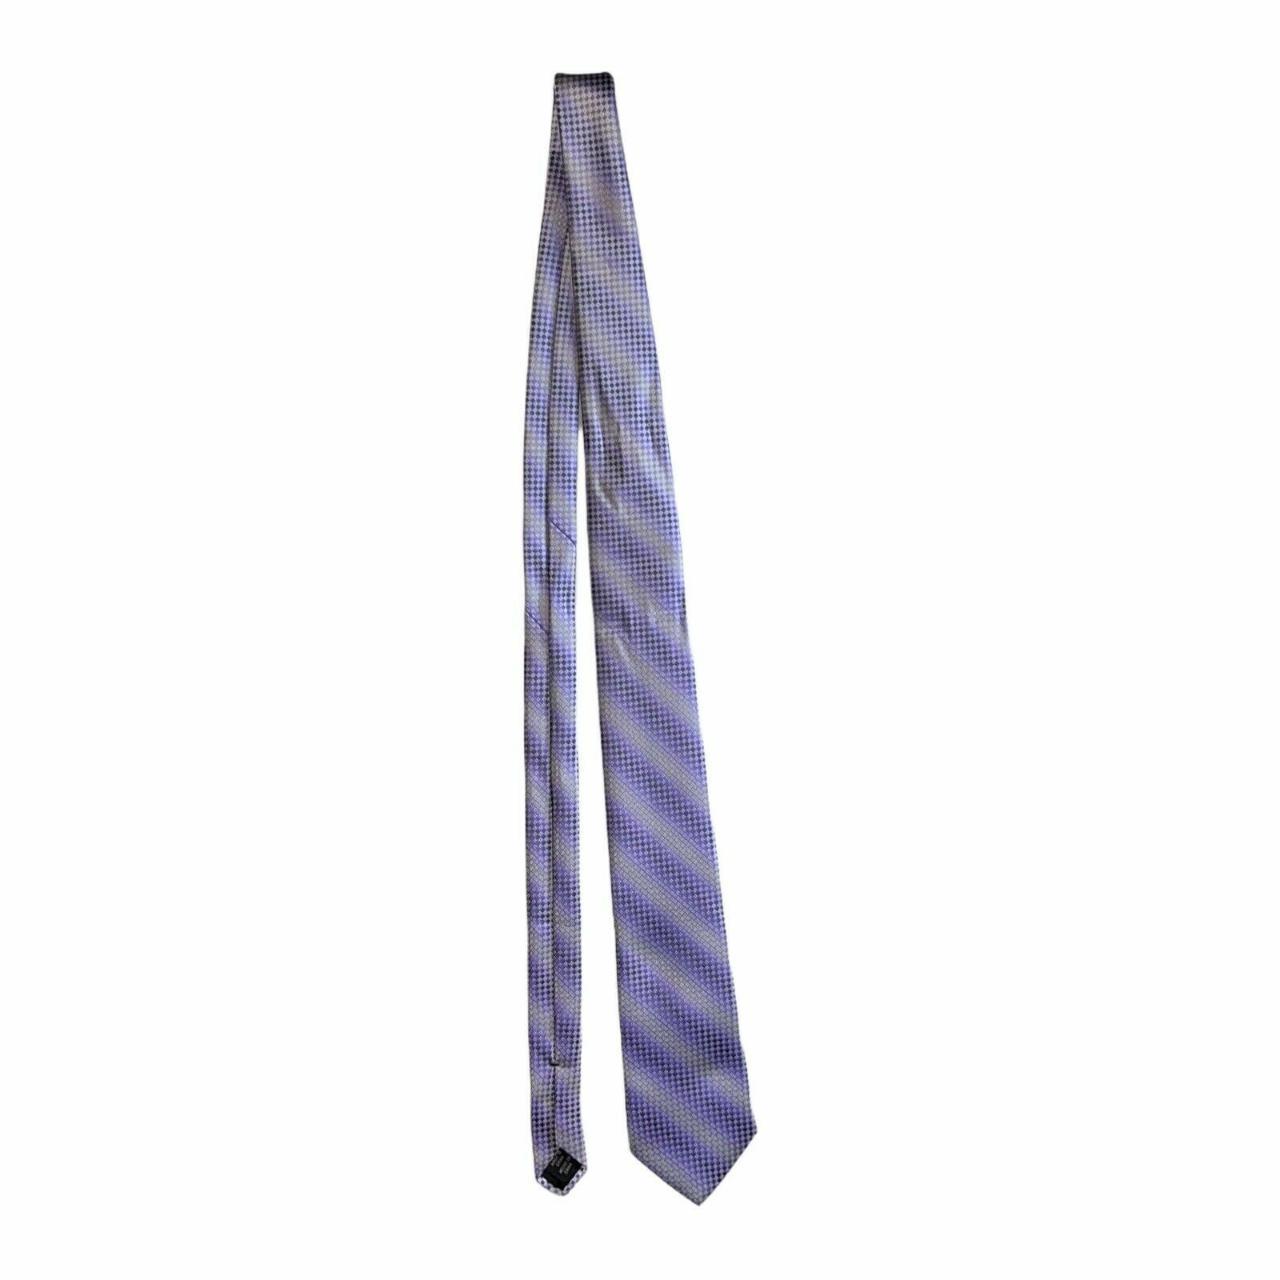 Product Image 2 - Brand: Van Heusen
Type: Tie
Style: Necktie
Color: